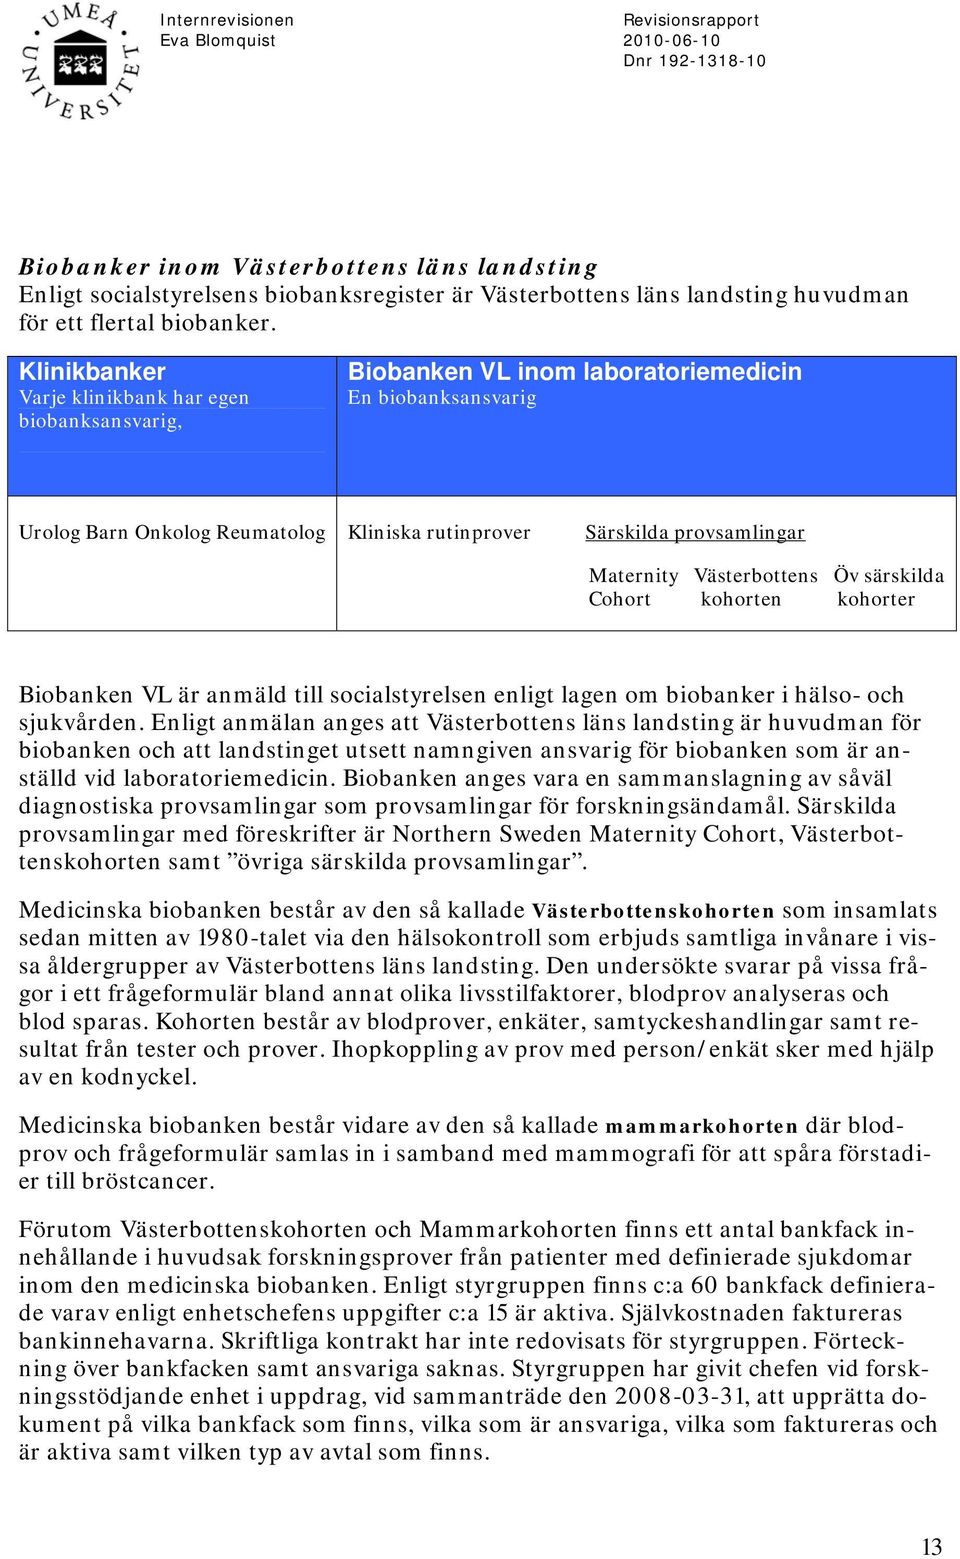 Västerbottens Öv särskilda Cohort kohorten kohorter Biobanken VL är anmäld till socialstyrelsen enligt lagen om biobanker i hälso- och sjukvården.